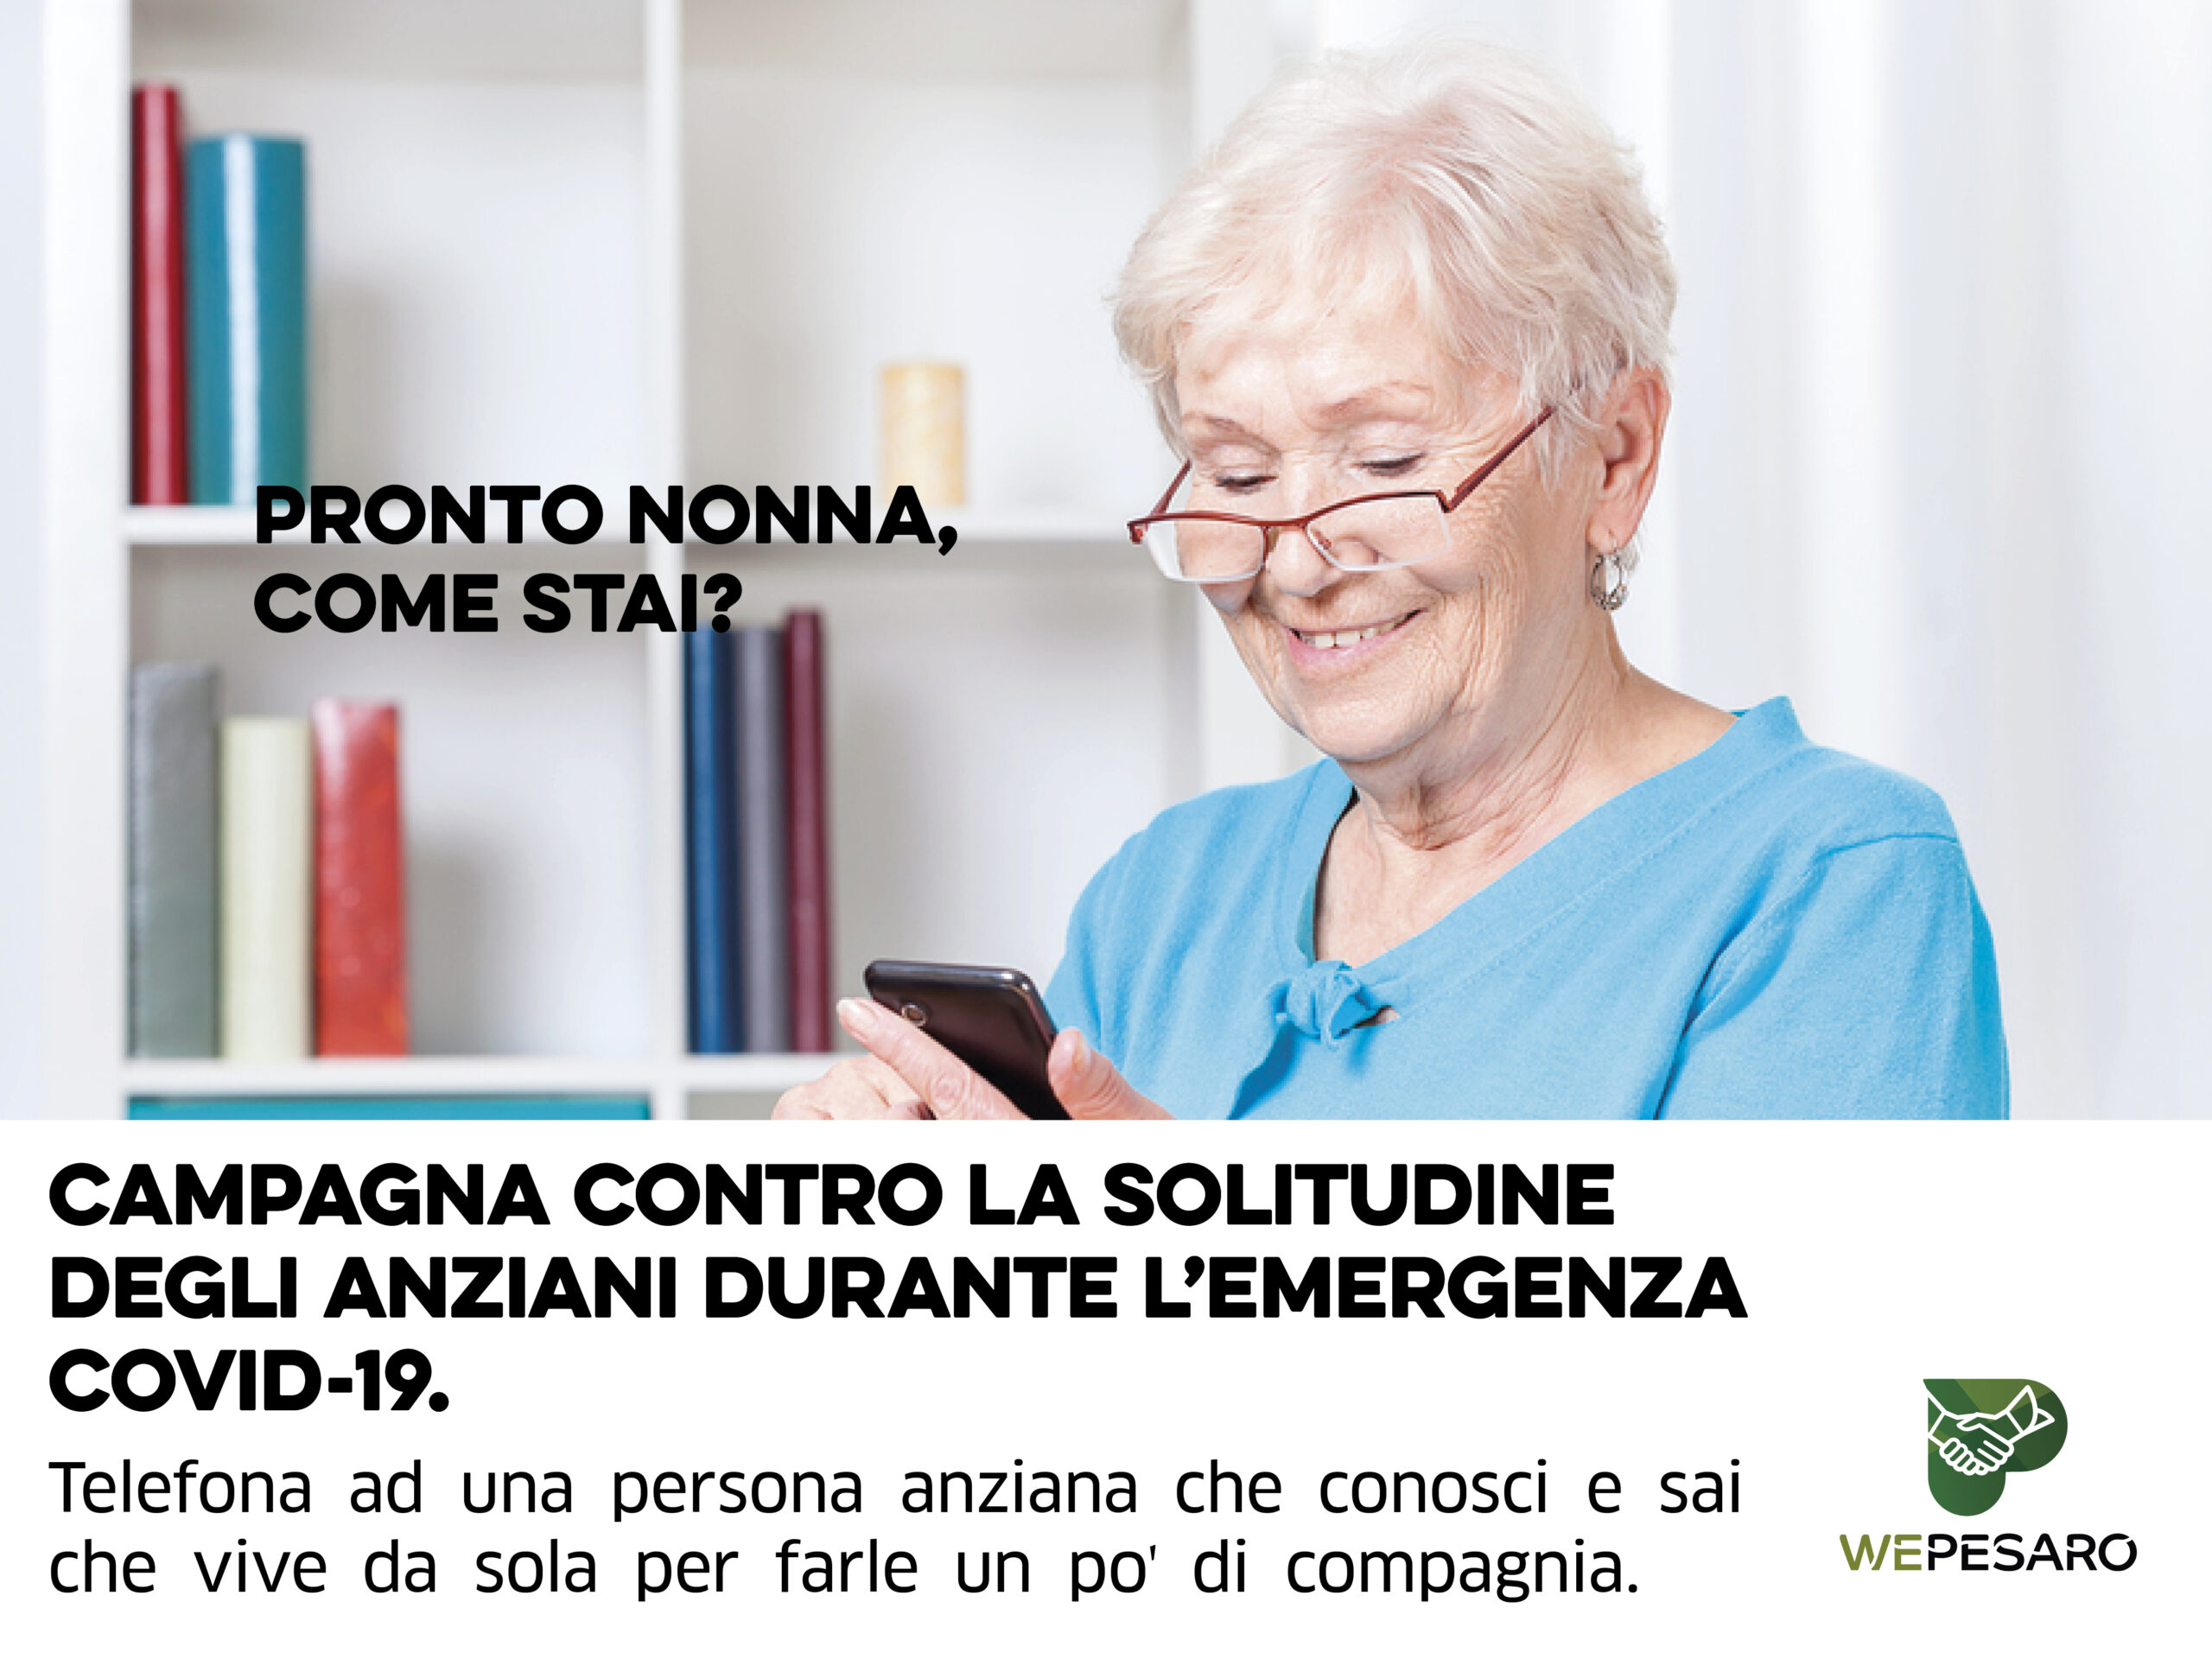 Pesaro. “Pronto nonna, come stai”: al via la campagna per arginare la solitudine in tempi di coronavirus